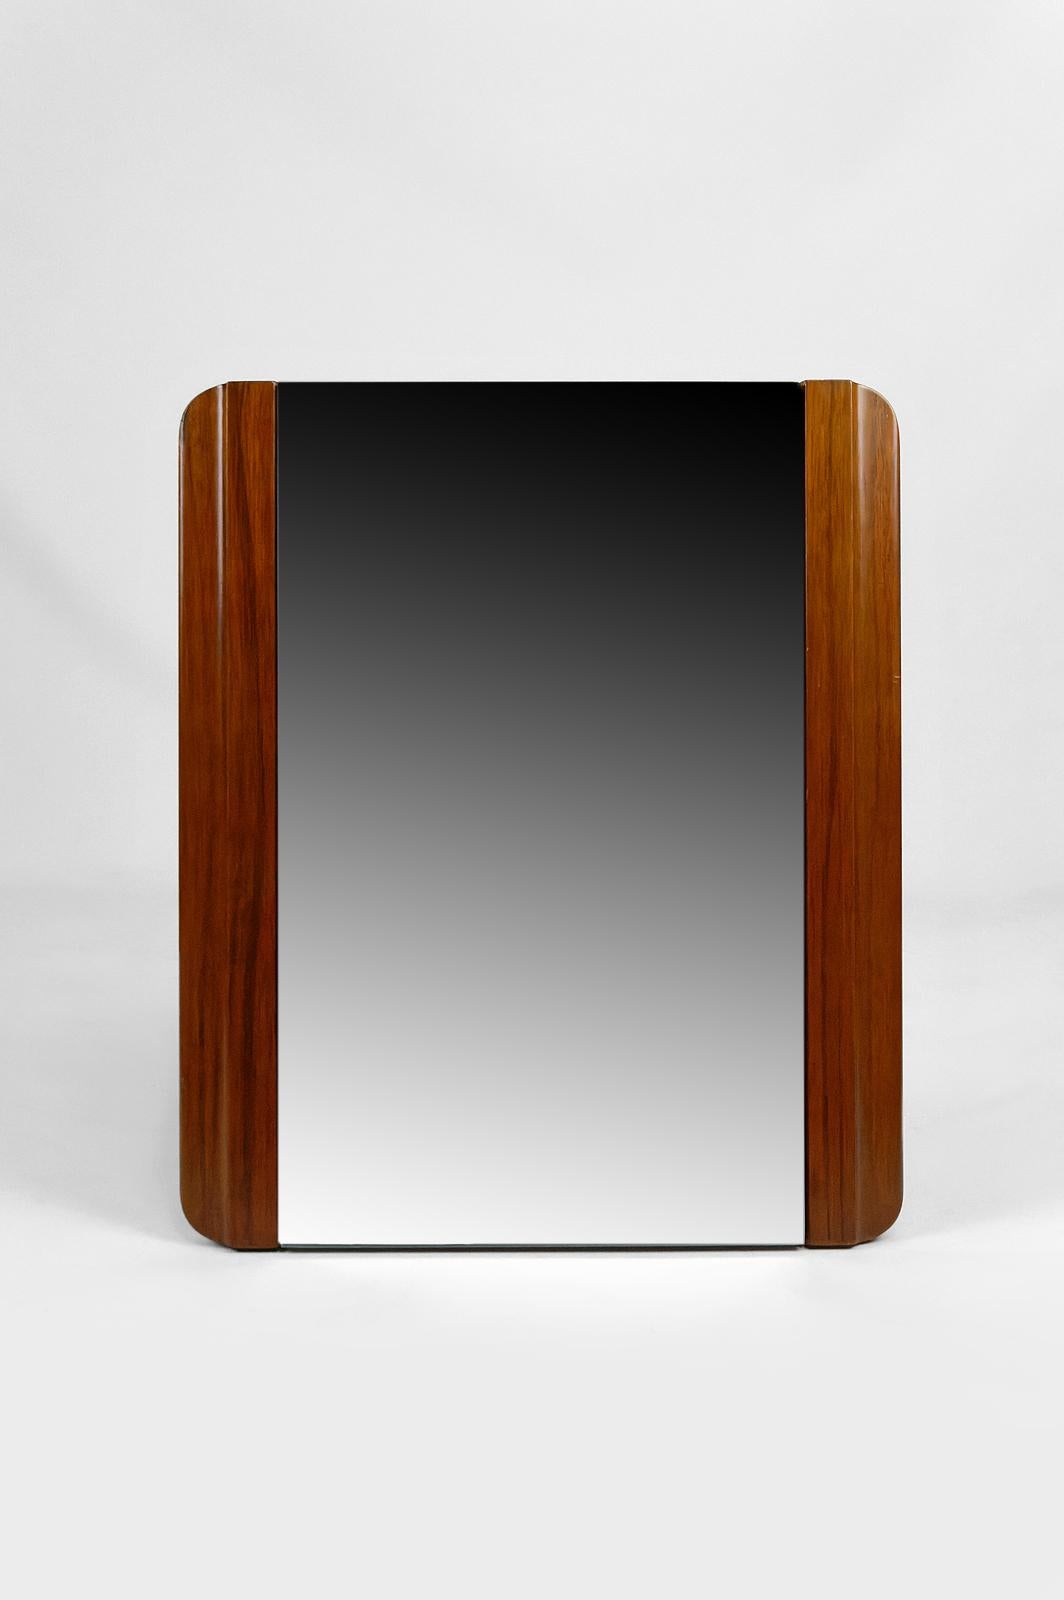 Elegant miroir à poser en acajou.

Art déco moderniste, France, vers 1925-1930.

En très bon état.

Dimensions totales :
hauteur 54 cm
largeur 47 cm
profondeur 15 cm

Dimensions du miroir : 33 x 54 cm